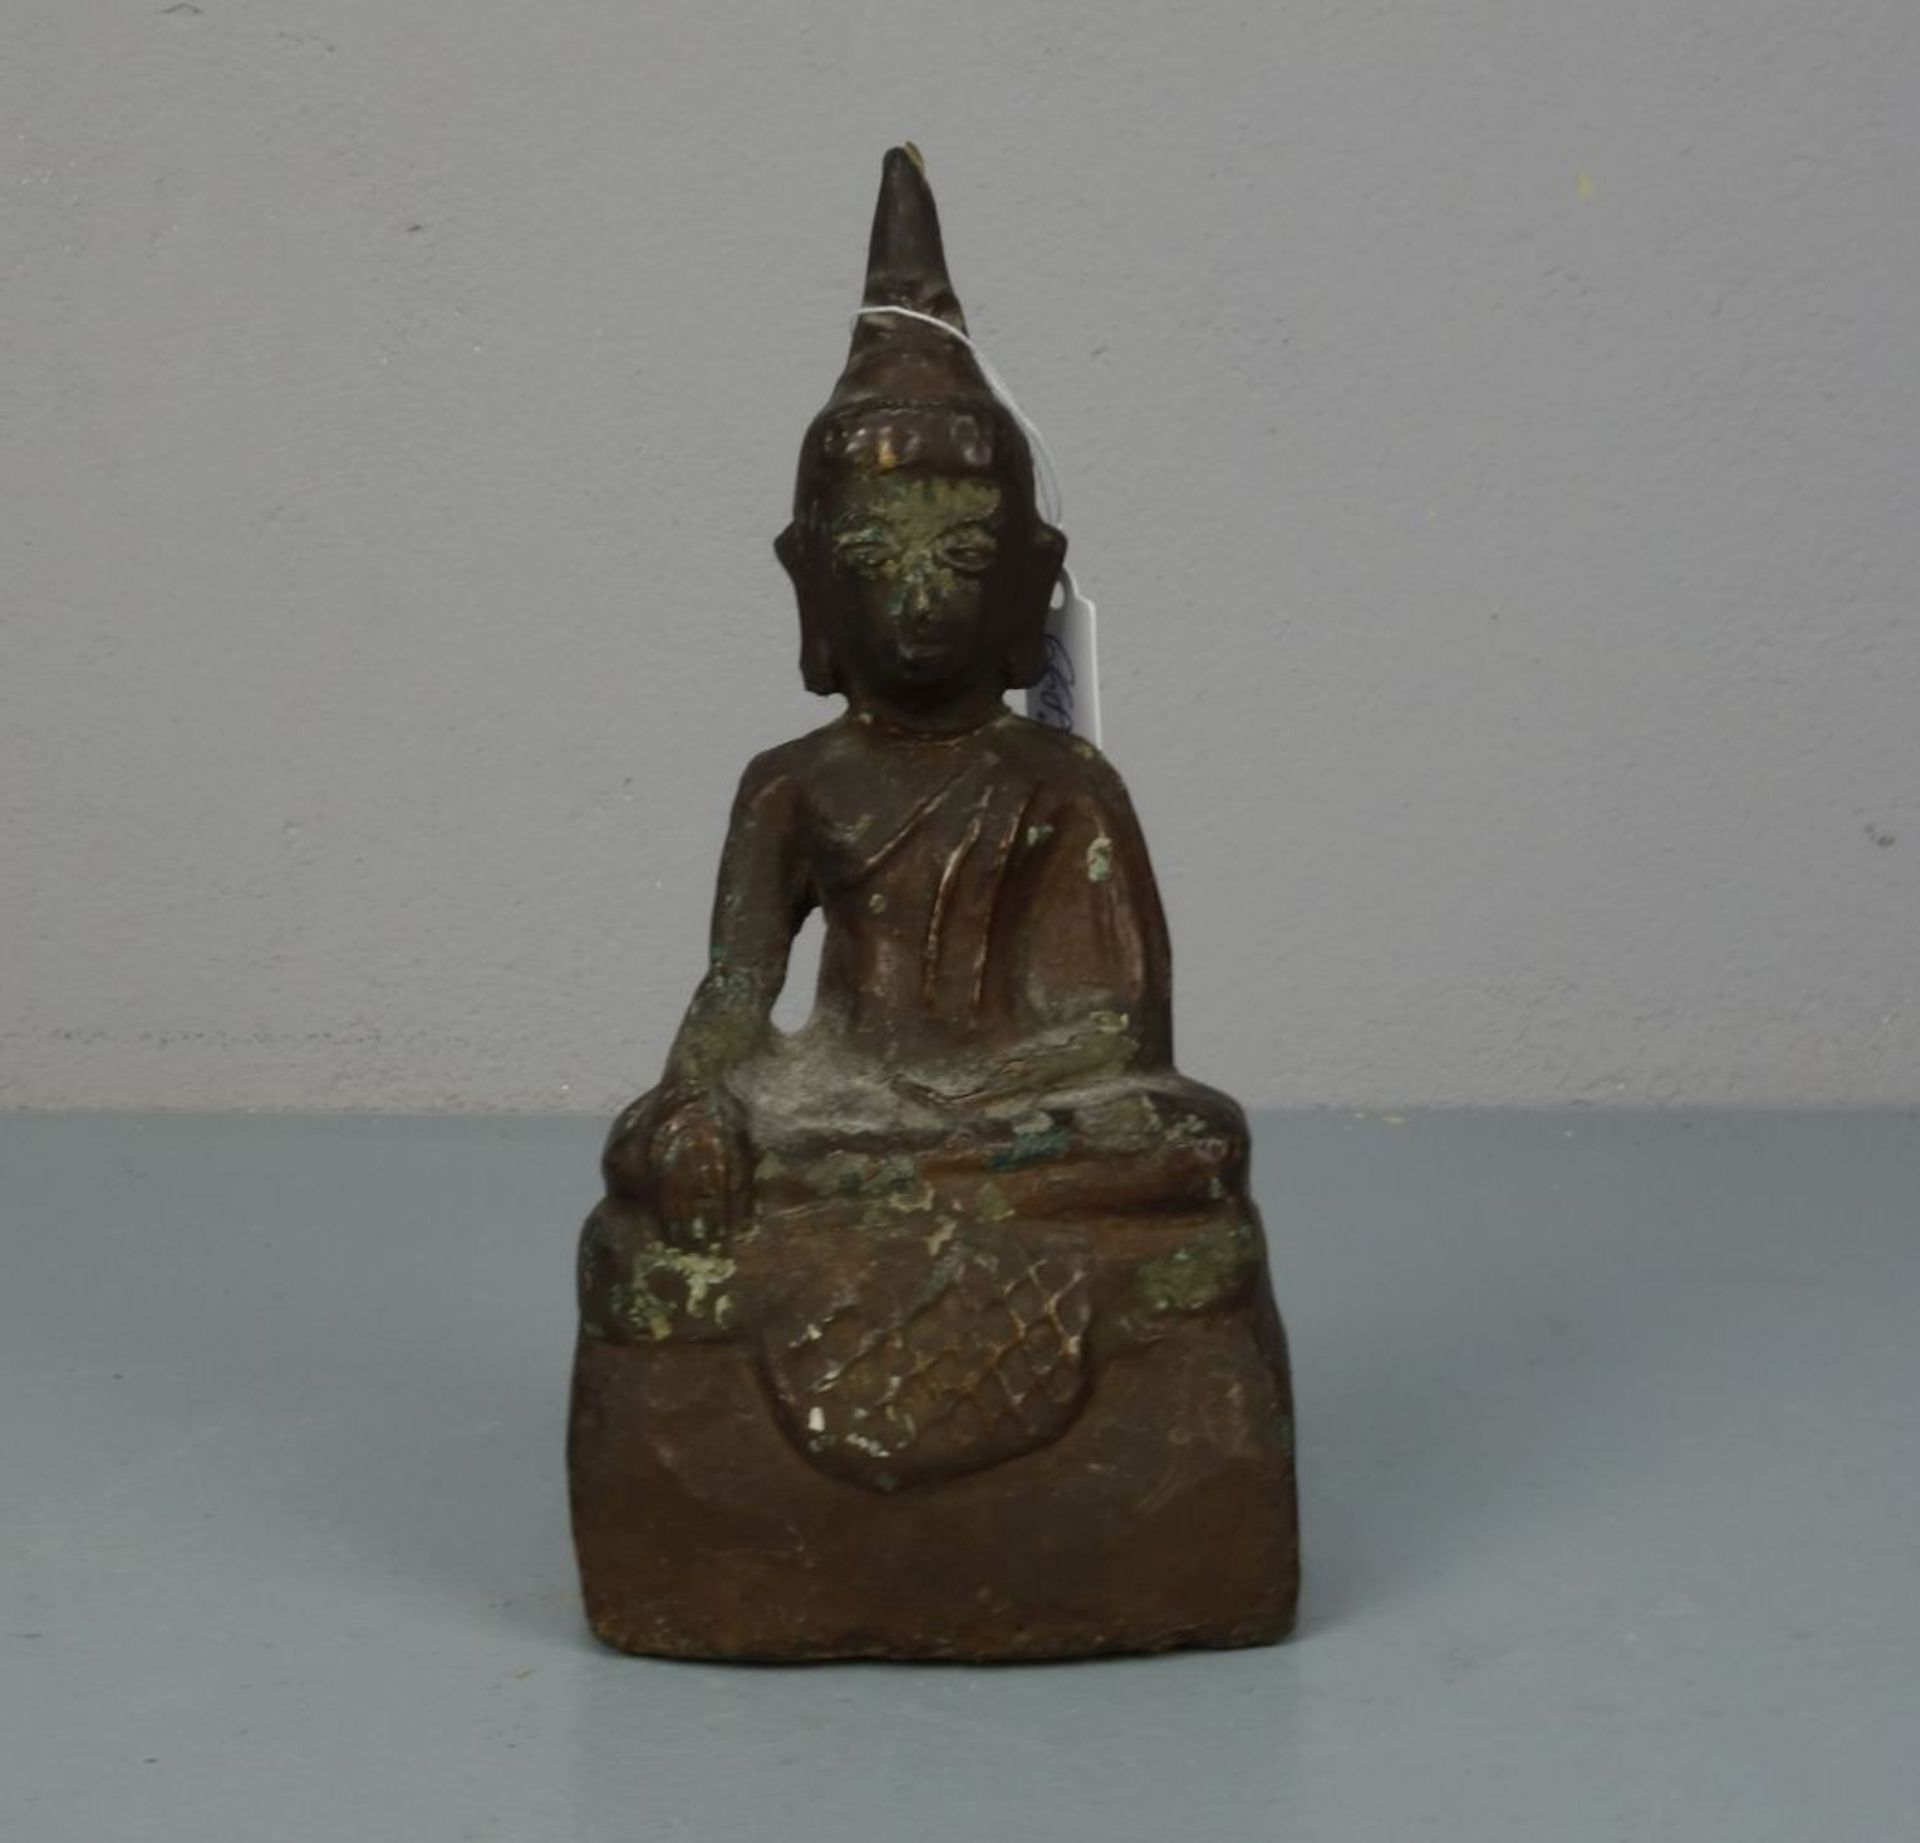 SKULPTUR / sculpture: "Buddha", in seltenerer Ausführung aus "Stucco" / gebranntem Ton bzw. Lehm mit